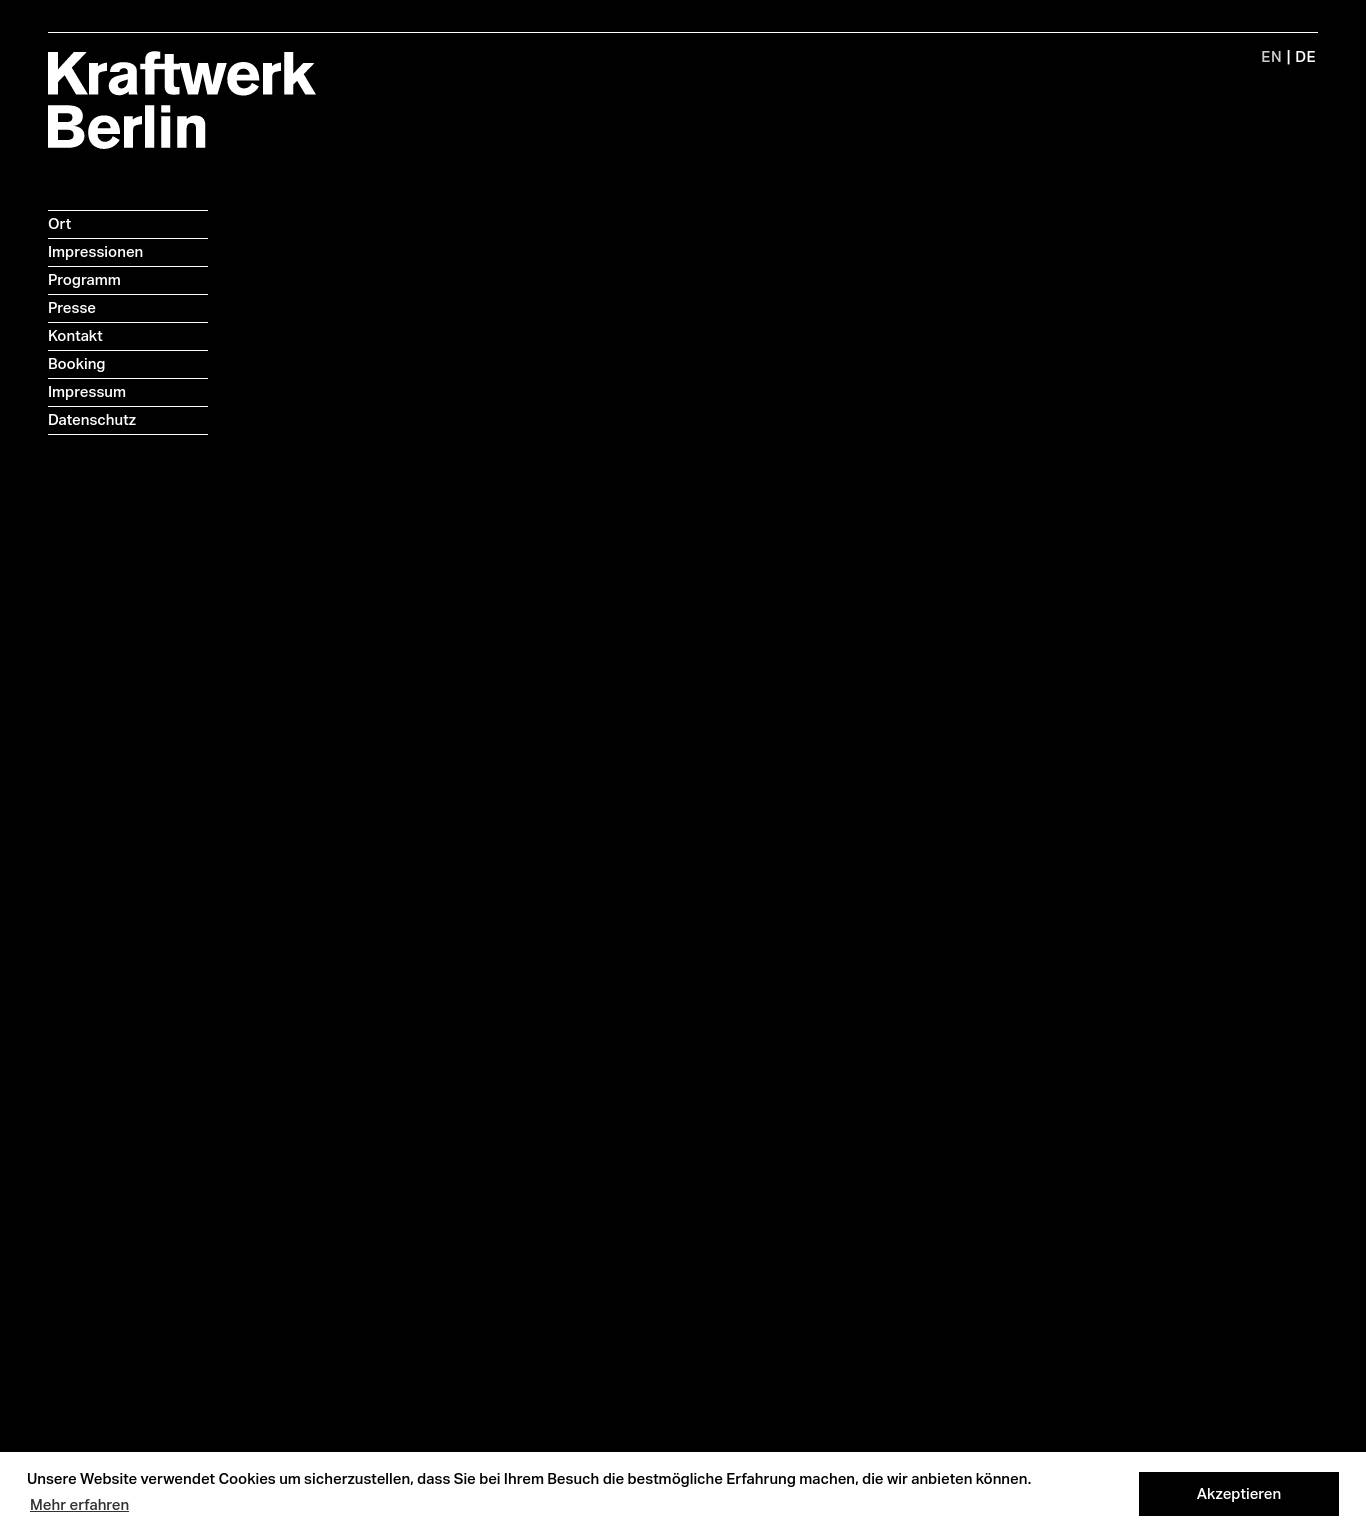 Large screenshot of Kraftwerk Berlin